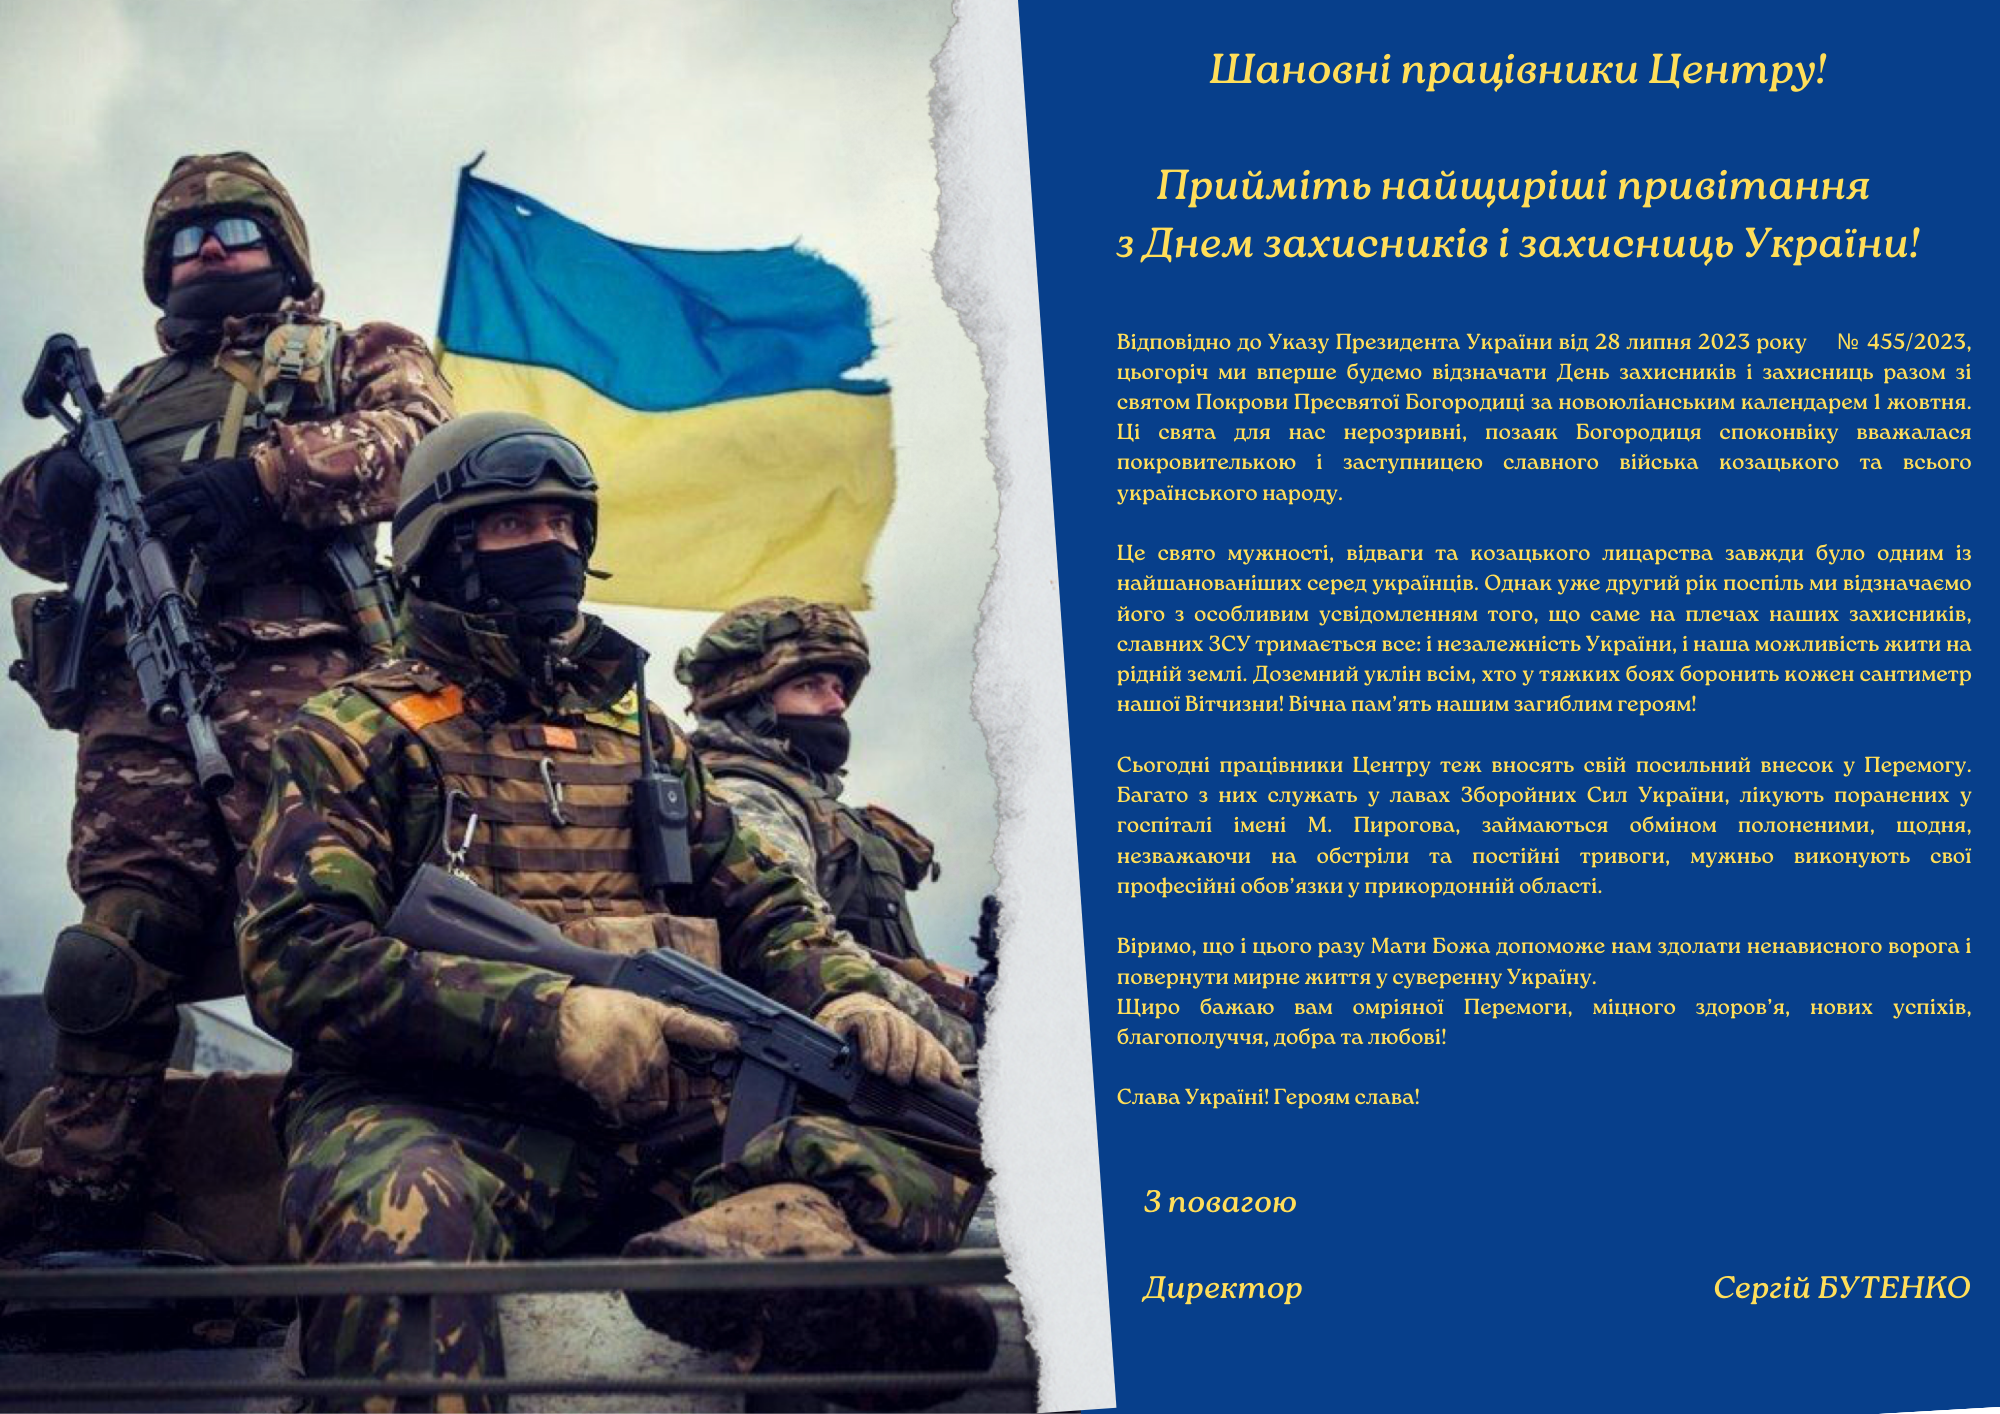 Привітання з Днем захисників і захисниць України!